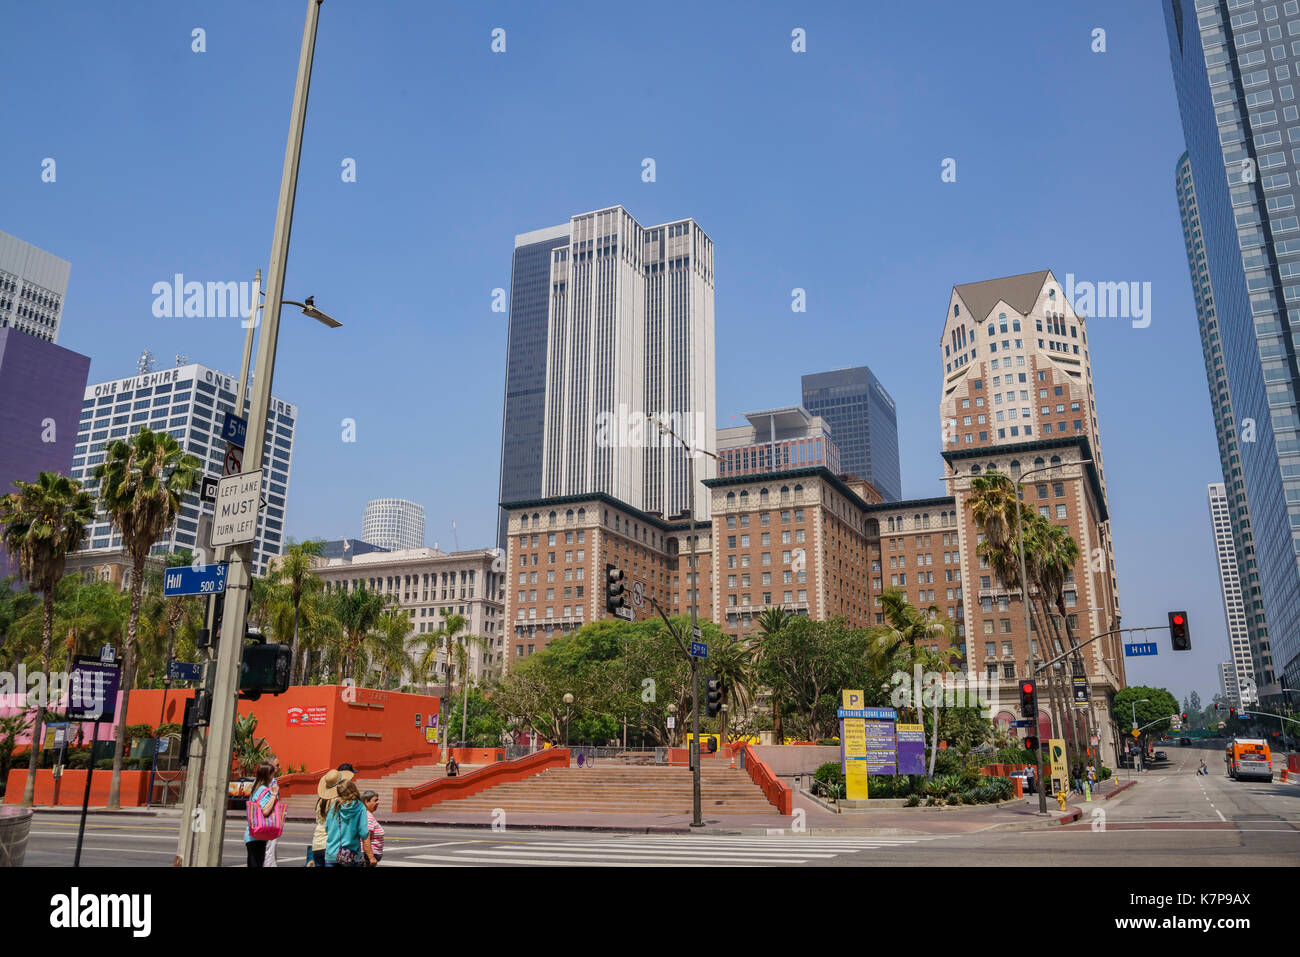 Los Angeles , JUN 4: Pershing Square on JUN 4, 2017 at Los Angeles, California Stock Photo